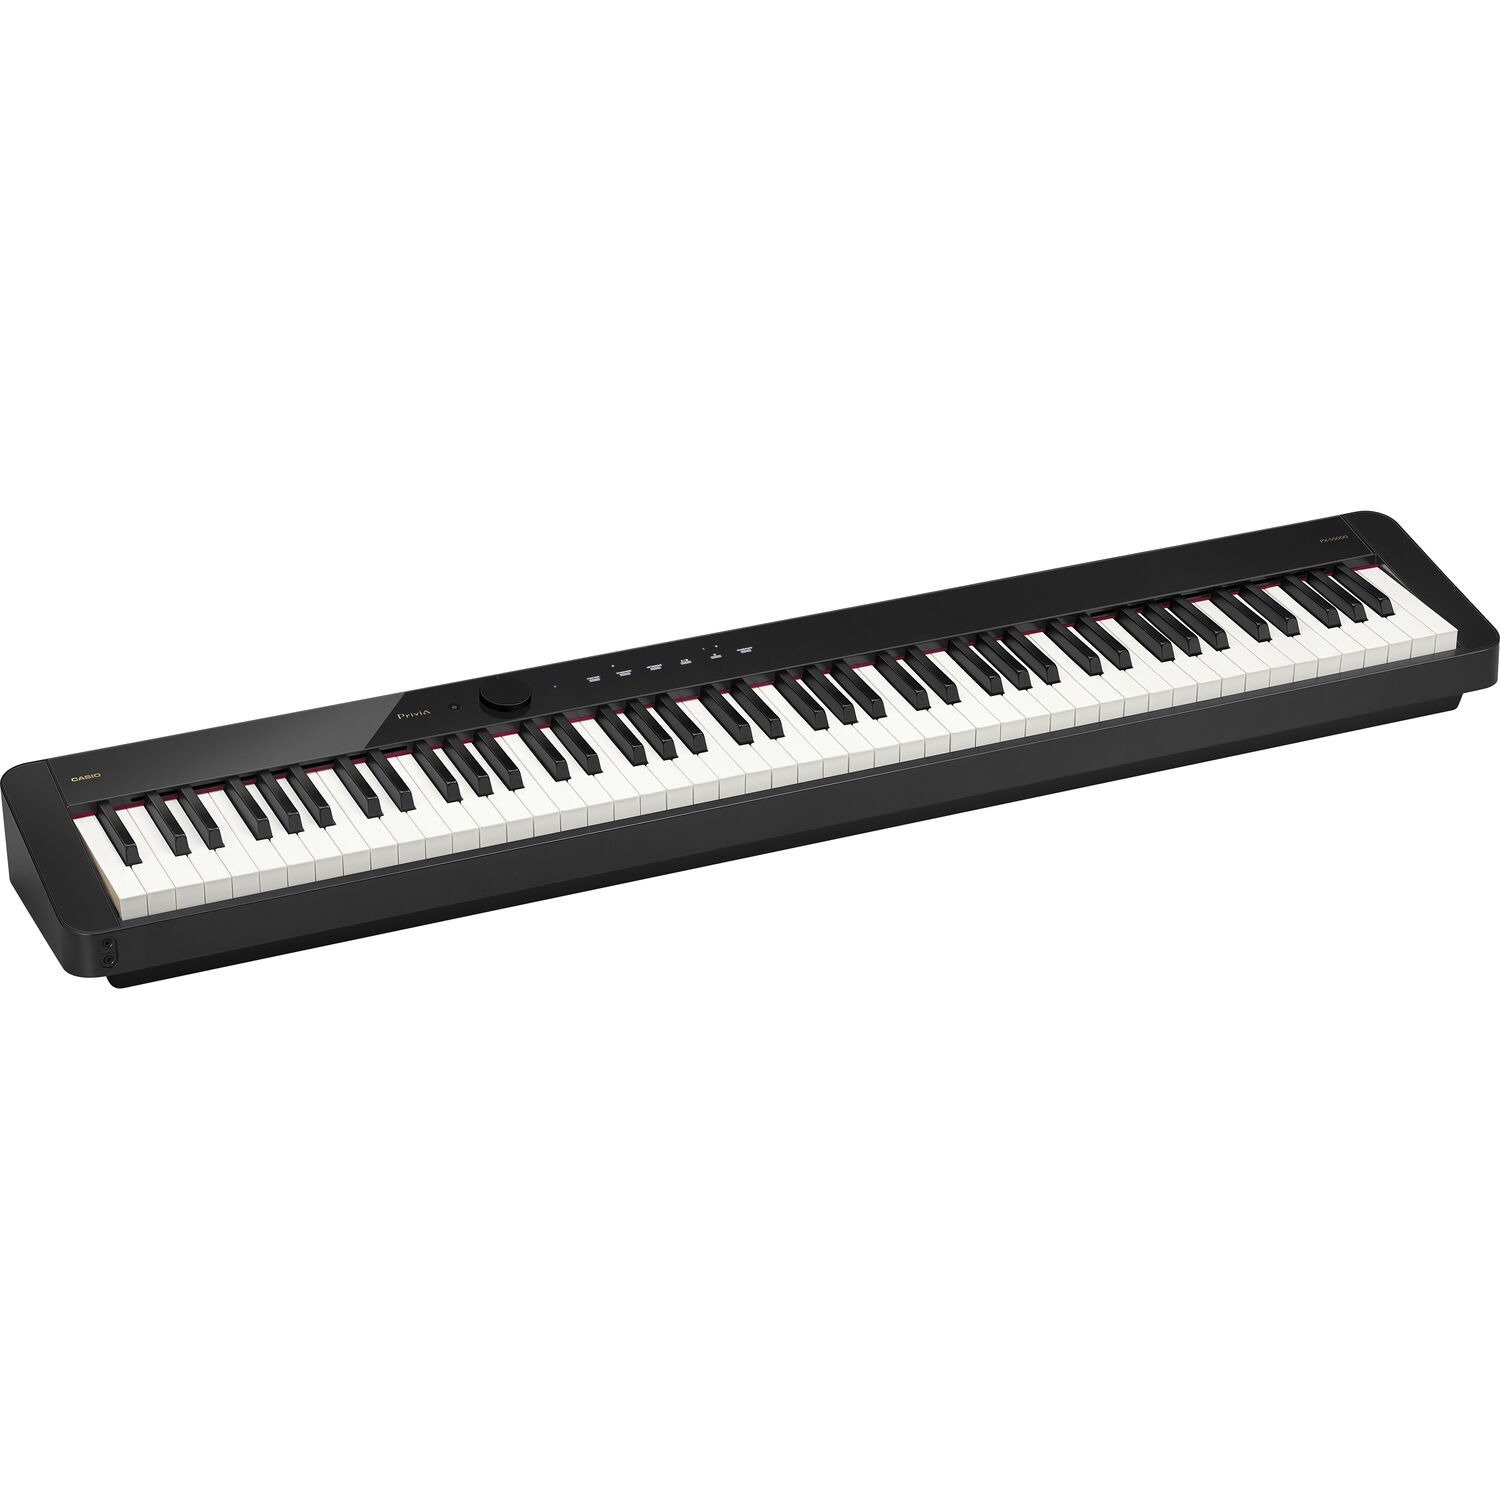 Piano Digital Portátil Casio Privia Px S5000 de 88 Teclas Y Cuerpo Delgado Negro